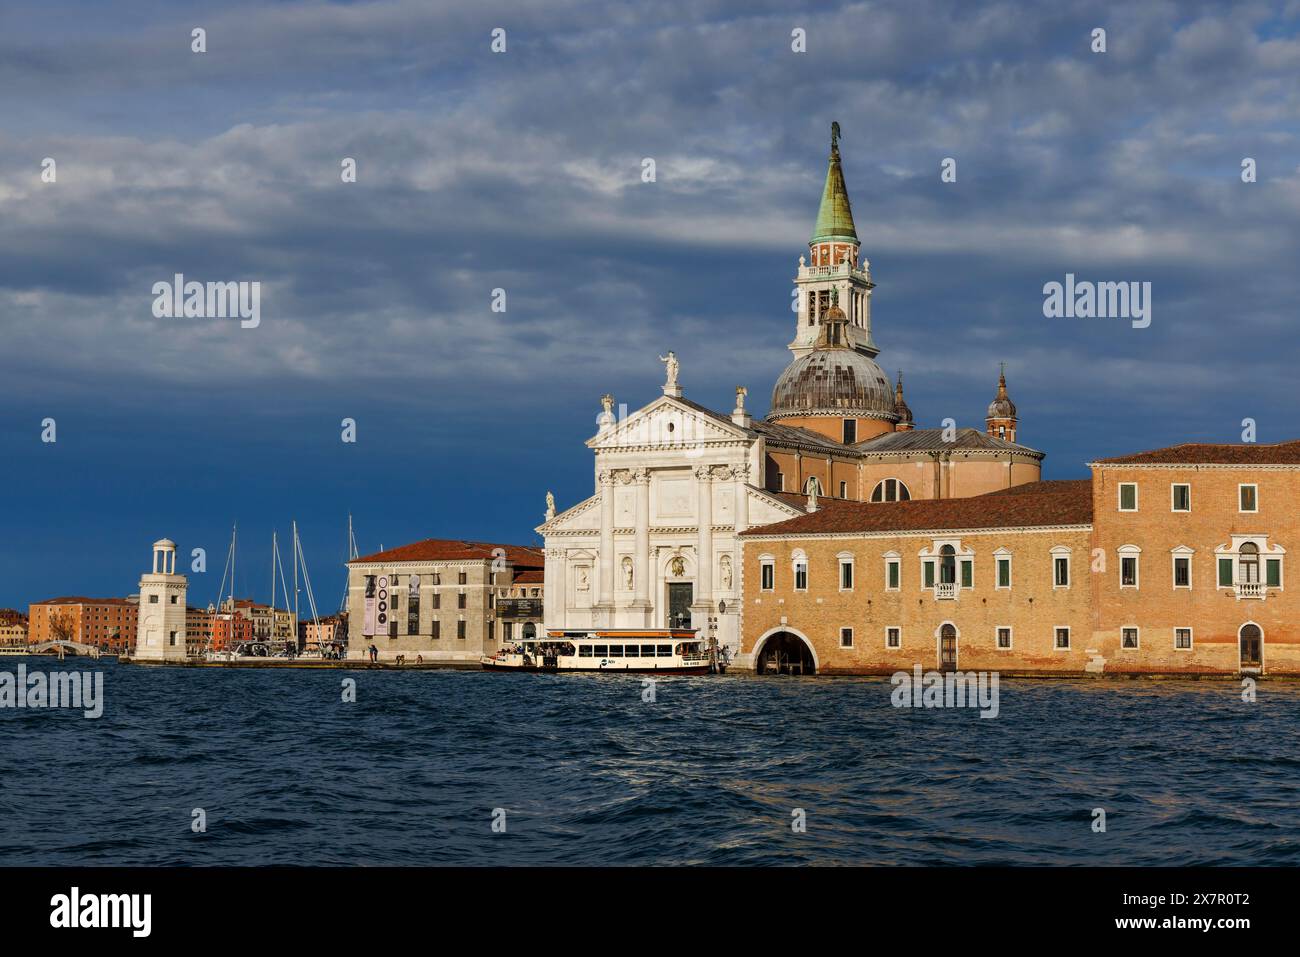 Venedig, Provinz Venedig, Region Venetien, Italien. Die isola oder die Insel San Giorgio und die gleichnamige Kirche. Venedig ist ein UNESCO-Weltkulturerbe Stockfoto